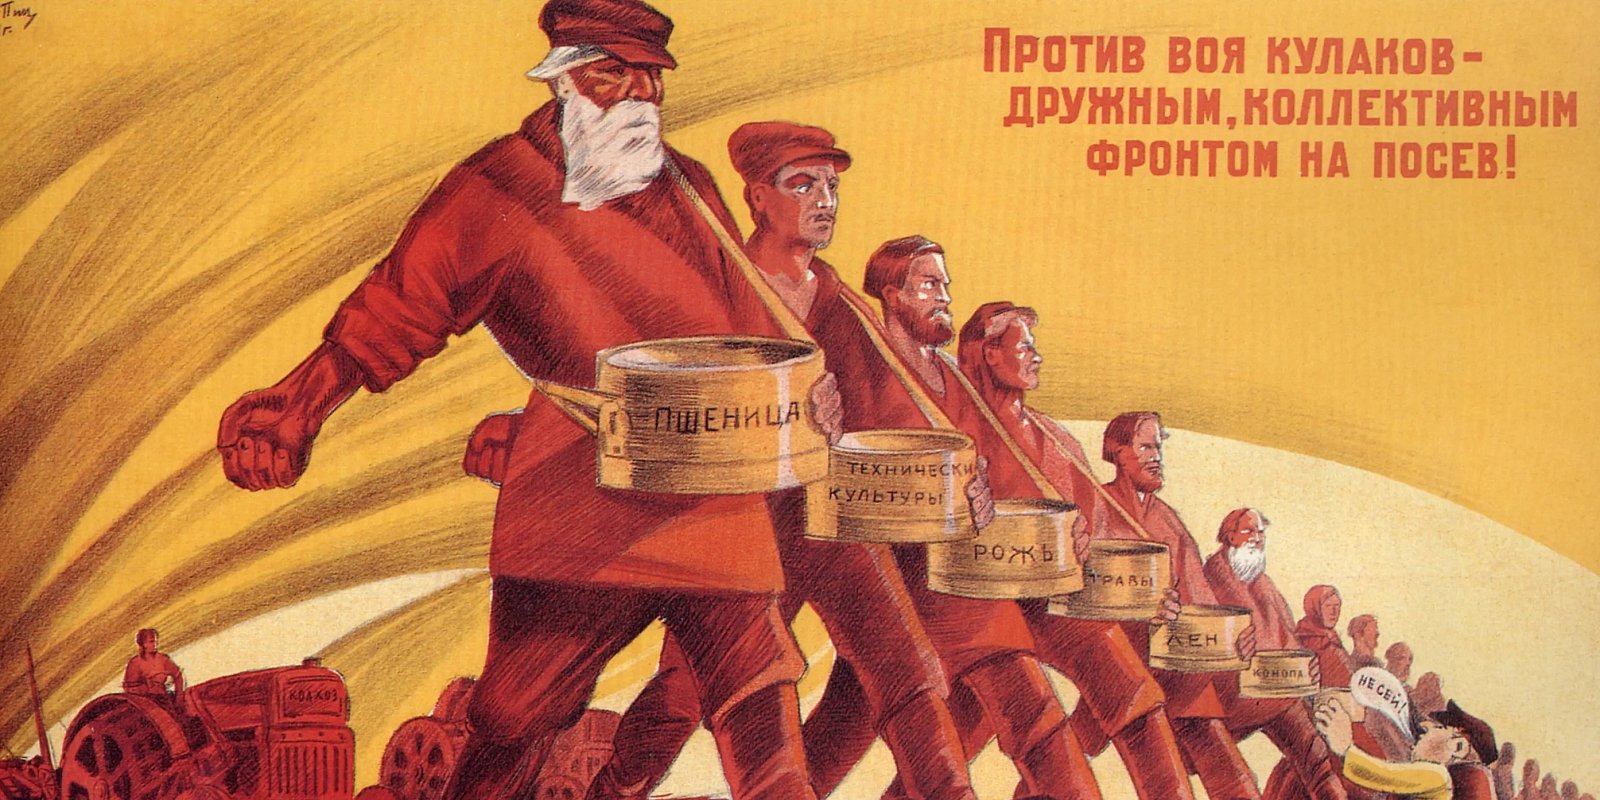 Плакат И. С. Шульпина. Фото: общественное достояние